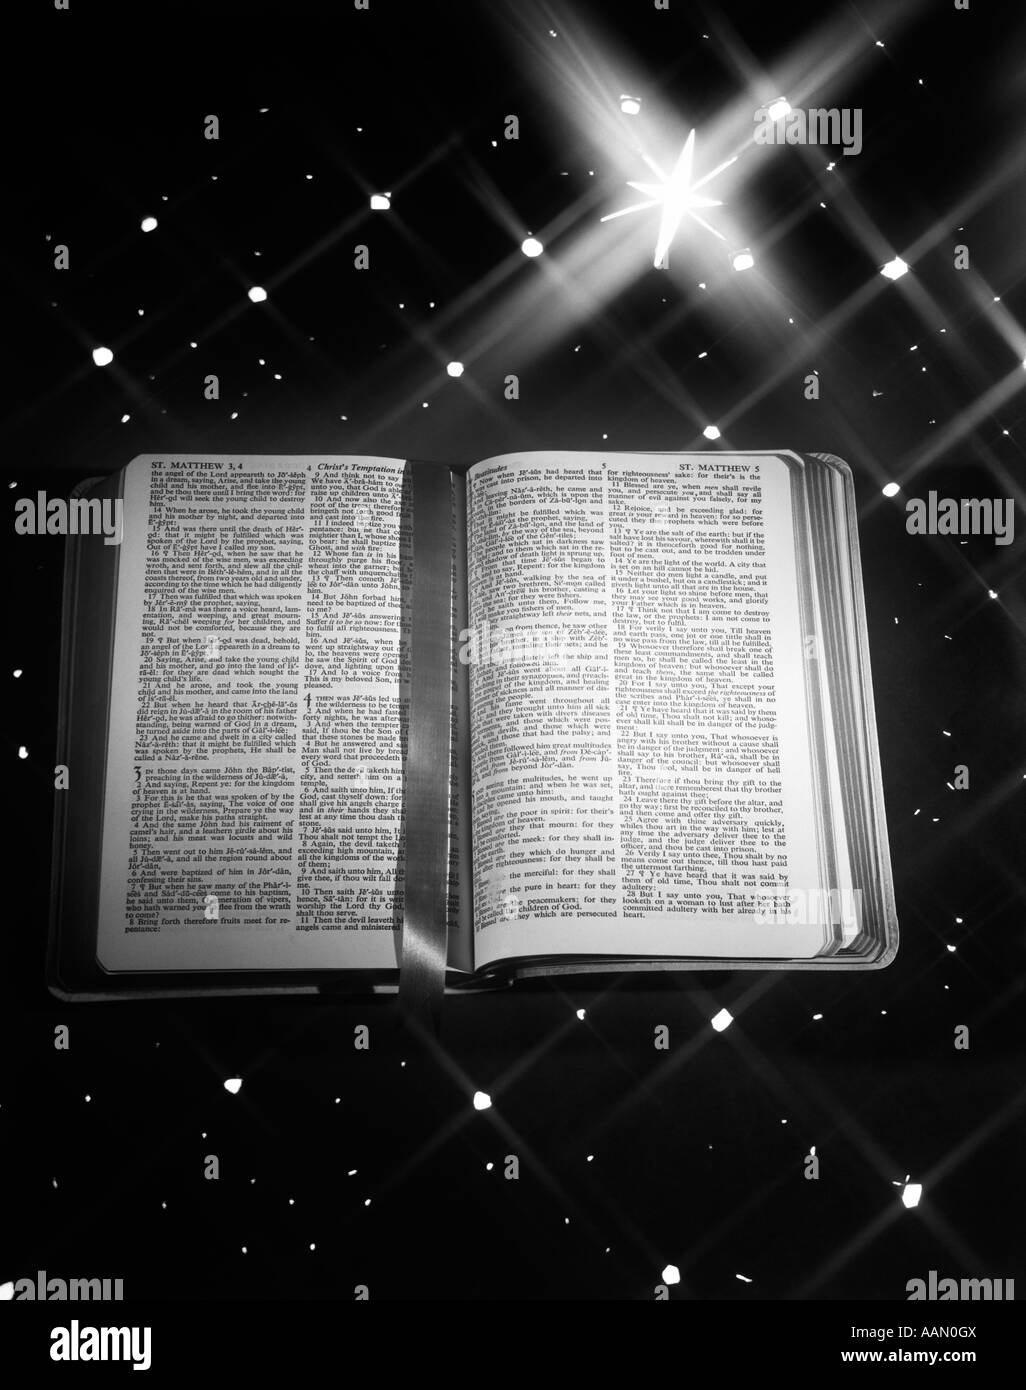 1950 LIBRO ABIERTO MARCADOR DE CINTA DE LA BIBLIA Mateo contra el fondo de estrellas gran estrella de Belén NAVIDAD Foto de stock